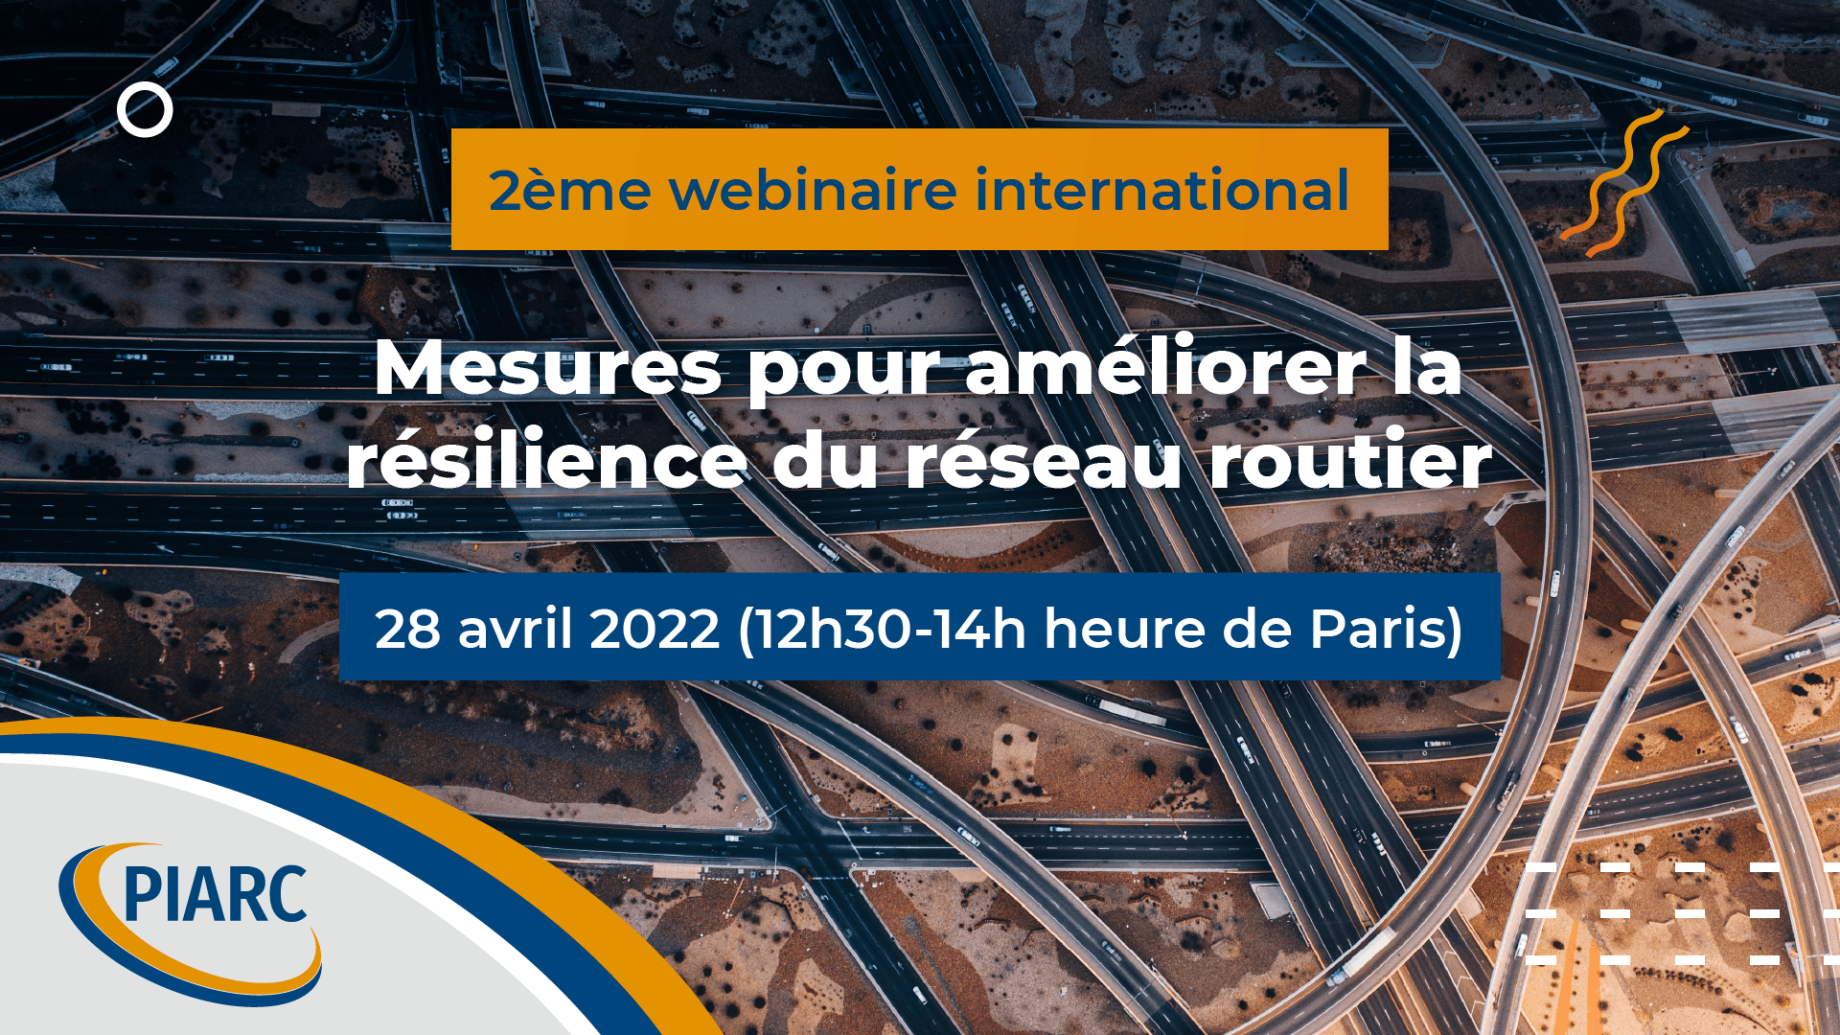 Rejoignez-nous et participez au webinaire international de PIARC "Mesures pour améliorer la résilience du réseau routier"